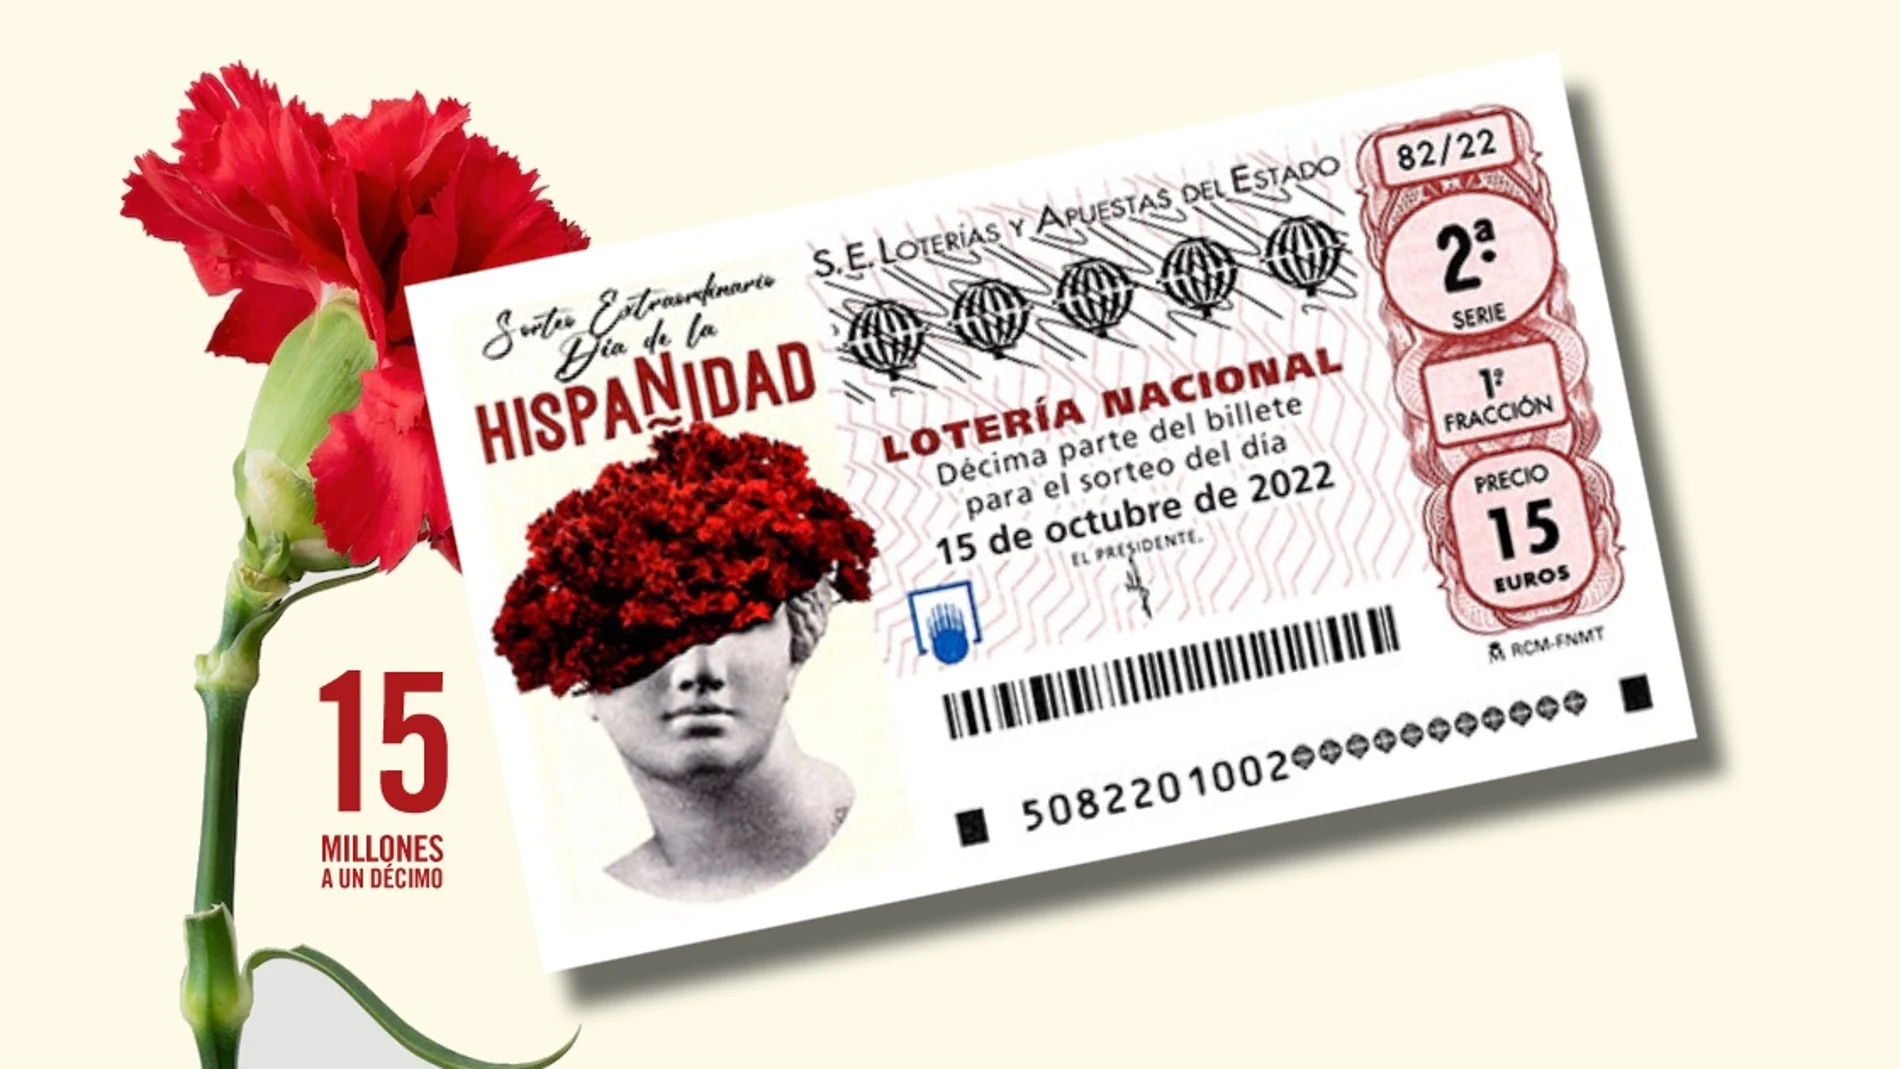 El 15 de octubre se celebra el Sorteo Extraordinario del Día de la Hispanidad 2022 de la Lotería Nacional 